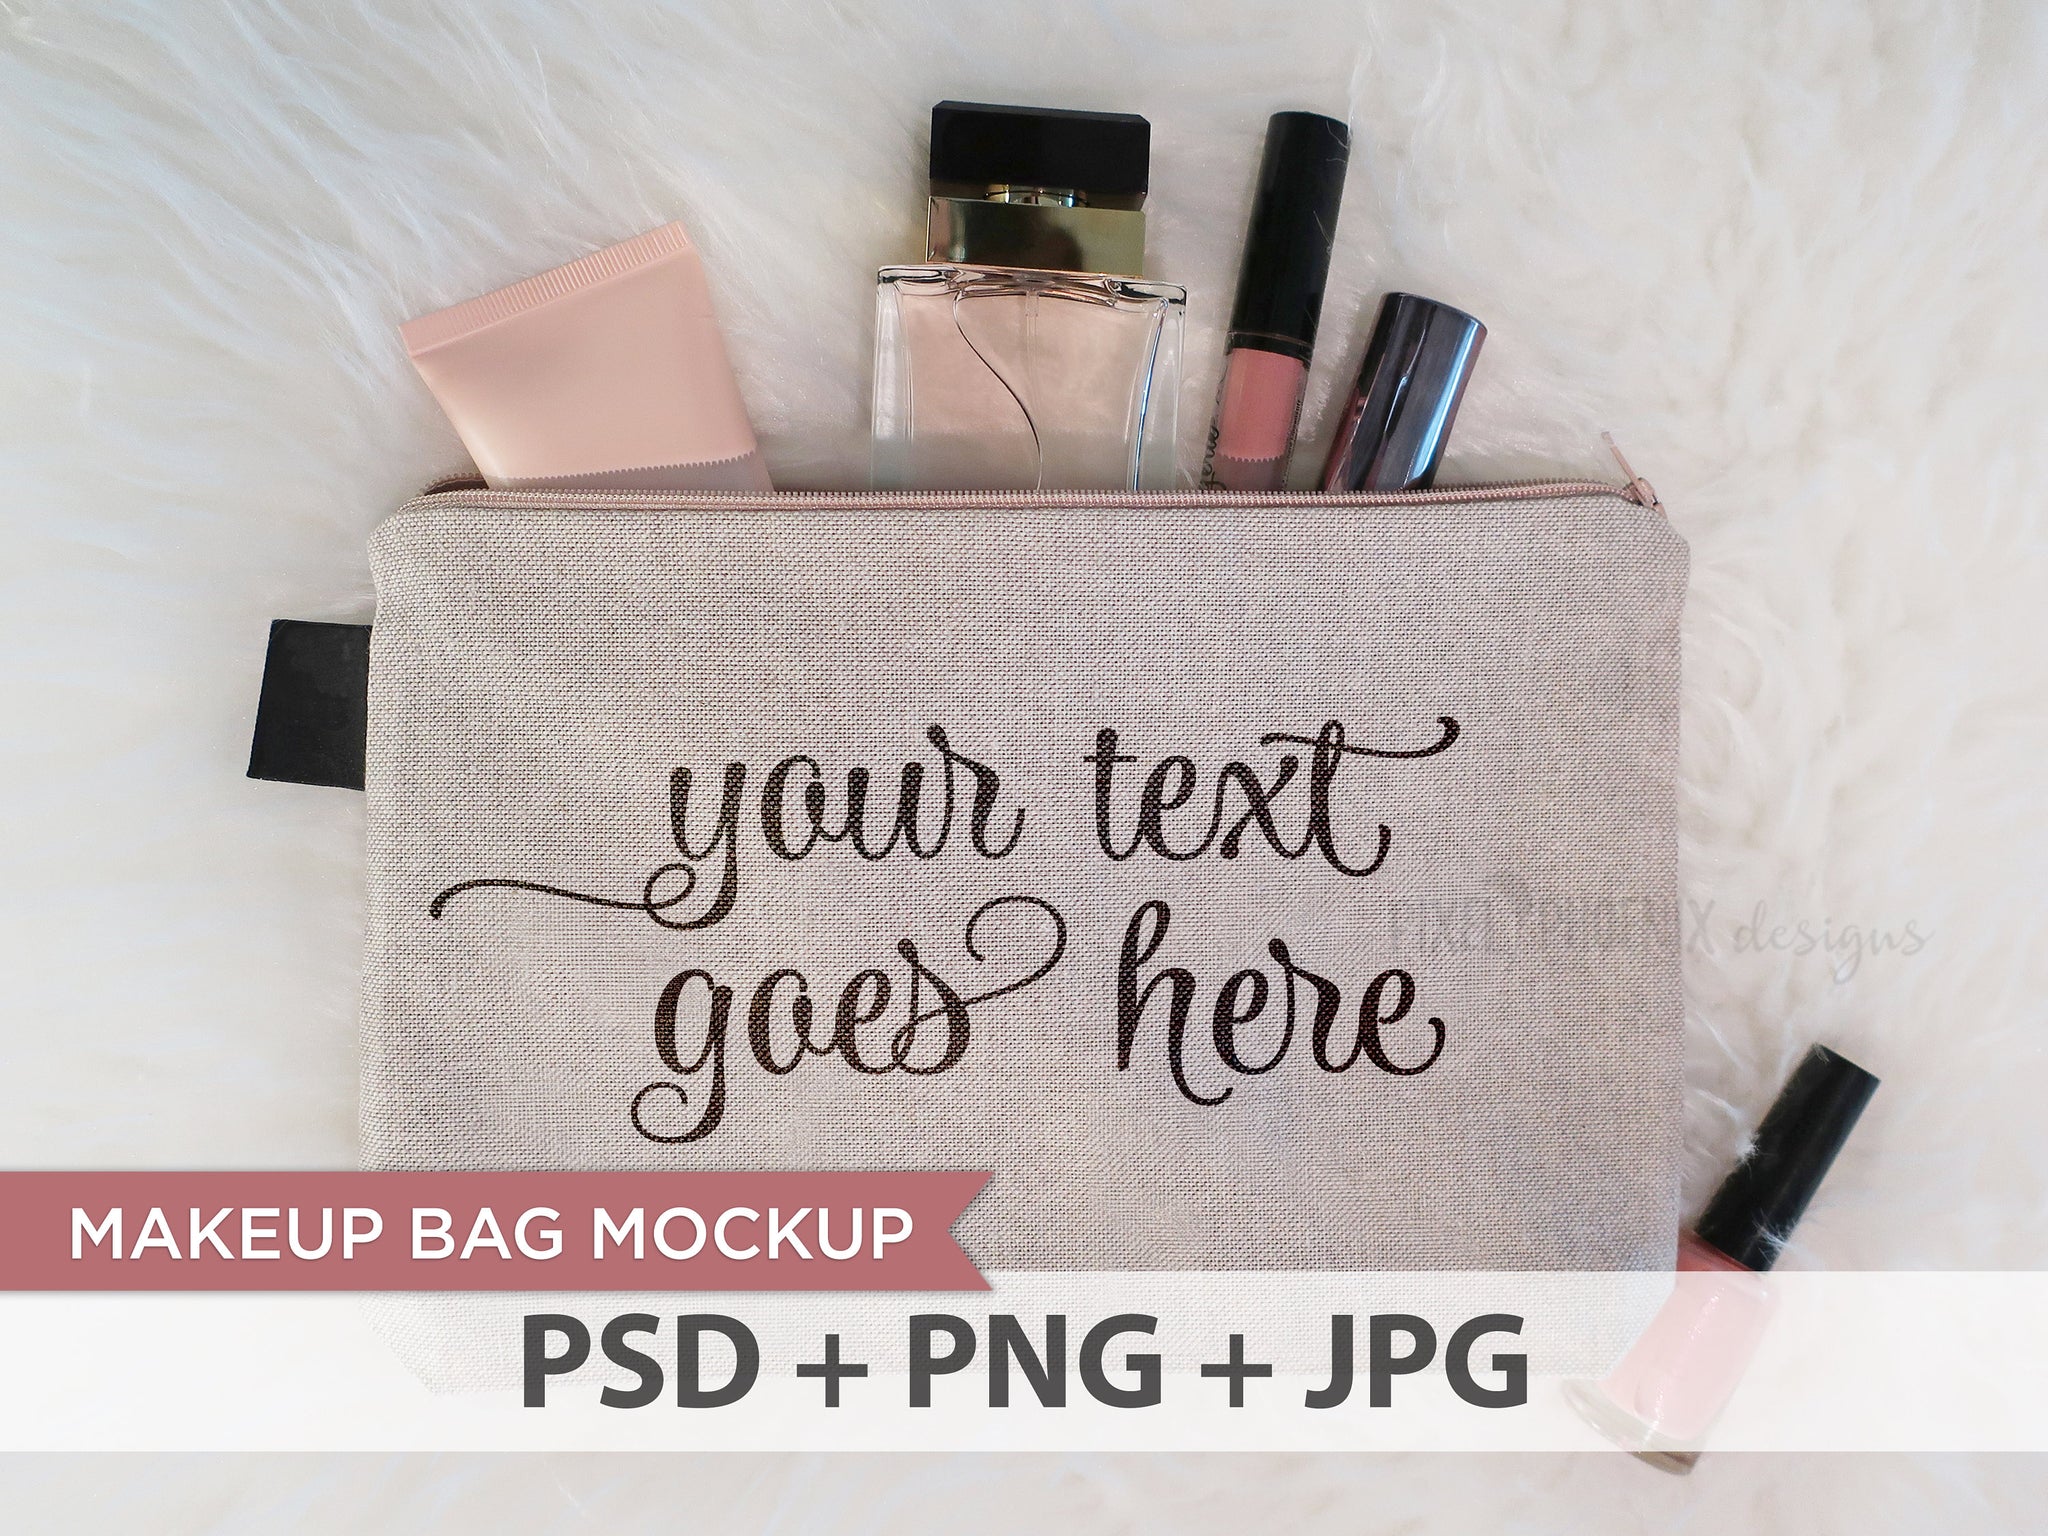 Download Makeup Bag Mockup, Makeup bag mock-up, make-up bag mock-up ...